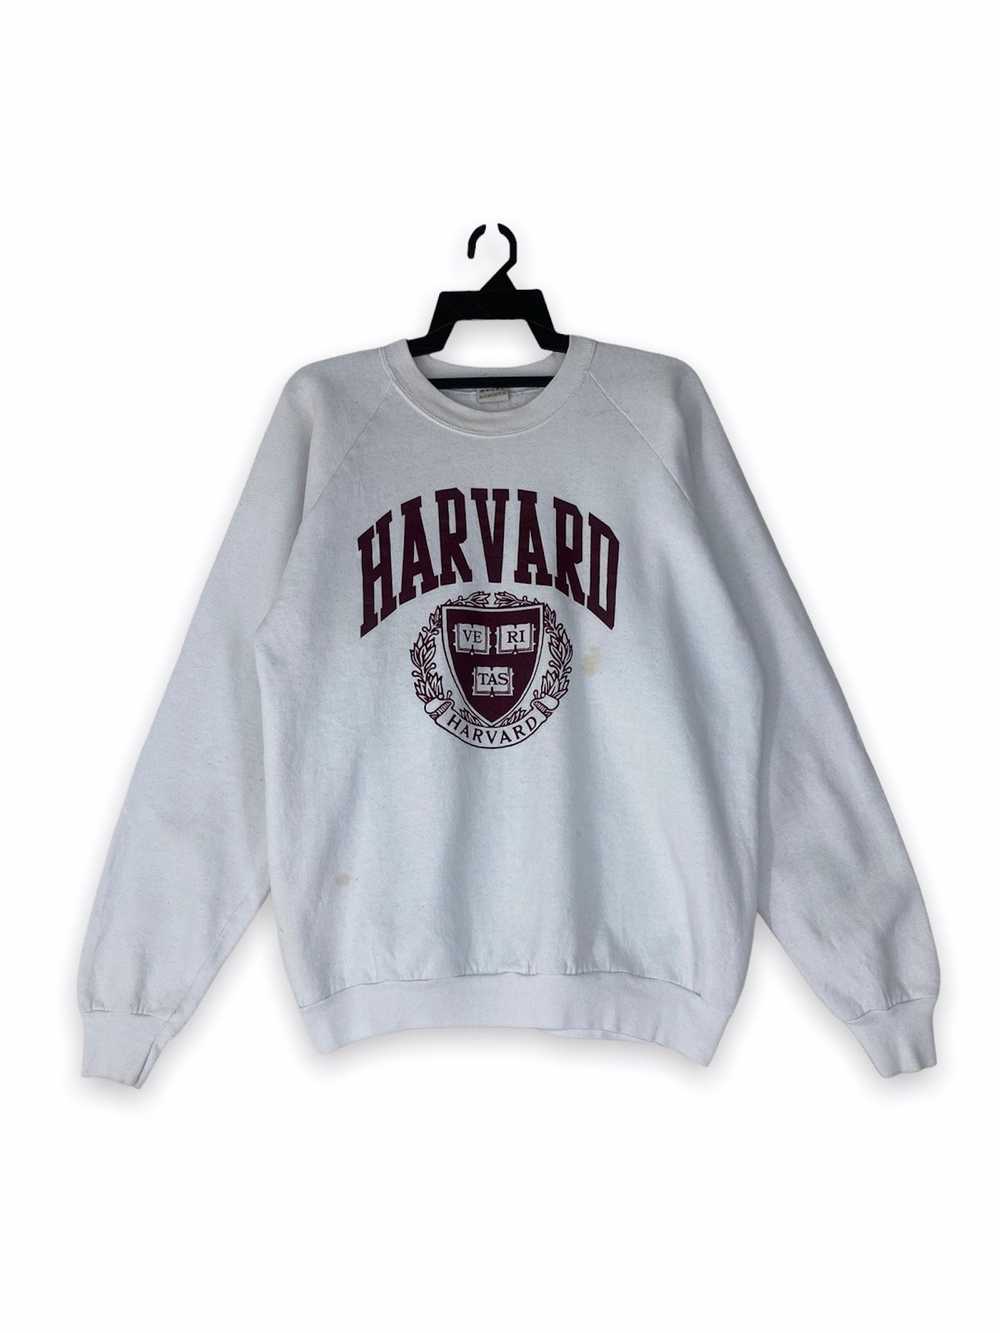 Harvard × Vintage Vintage rare Harvard University - image 1